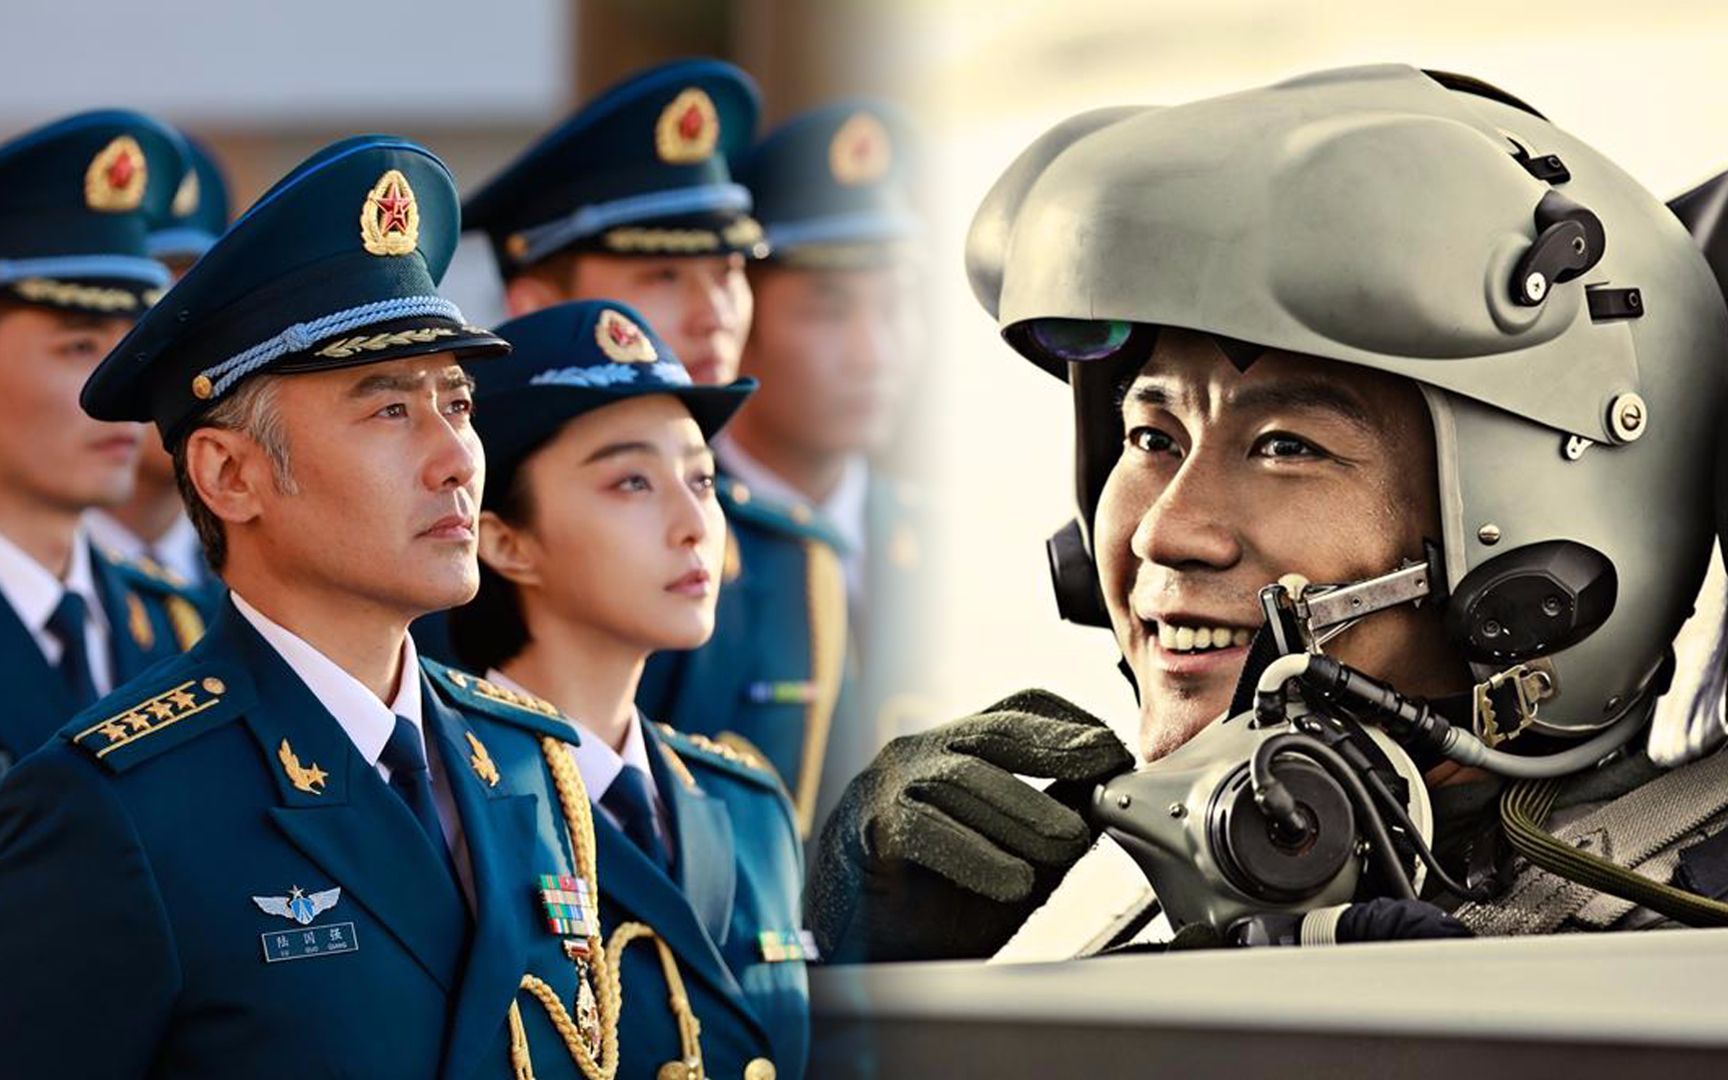 《空天猎》即将日本上映,他们是这样评价中国空军的!